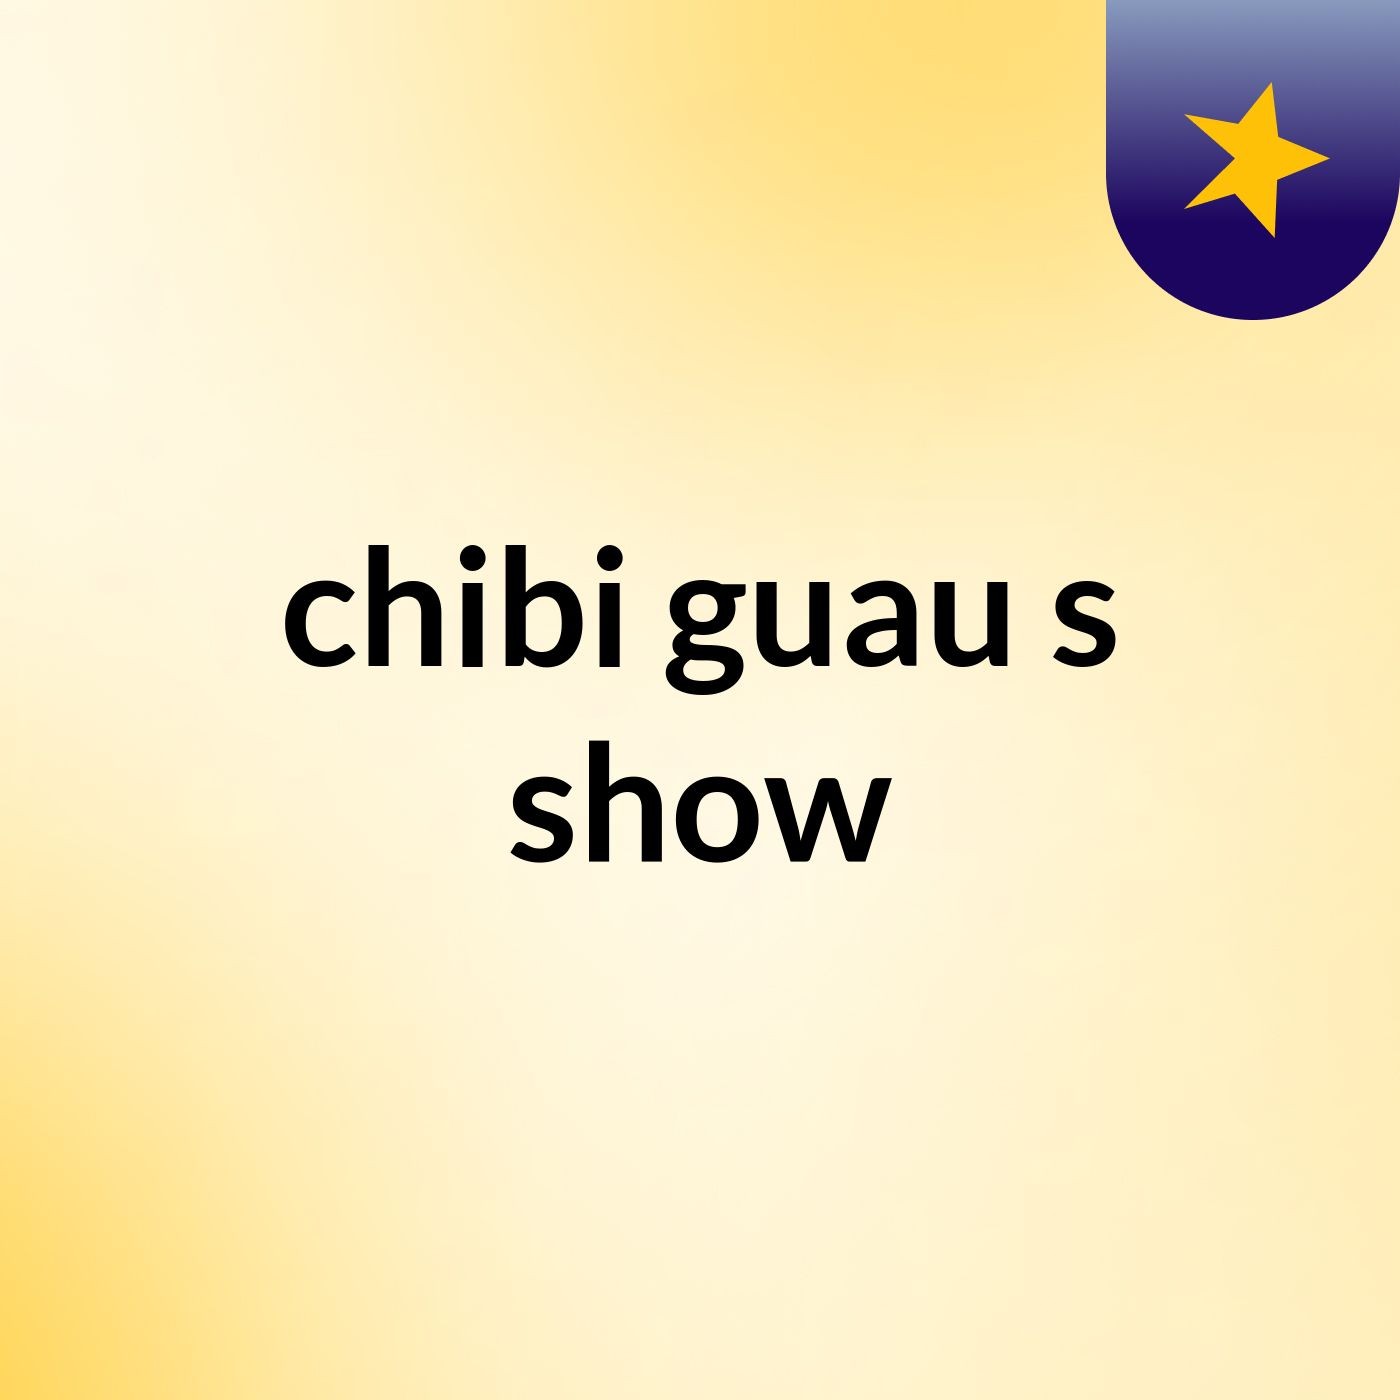 chibi guau's show